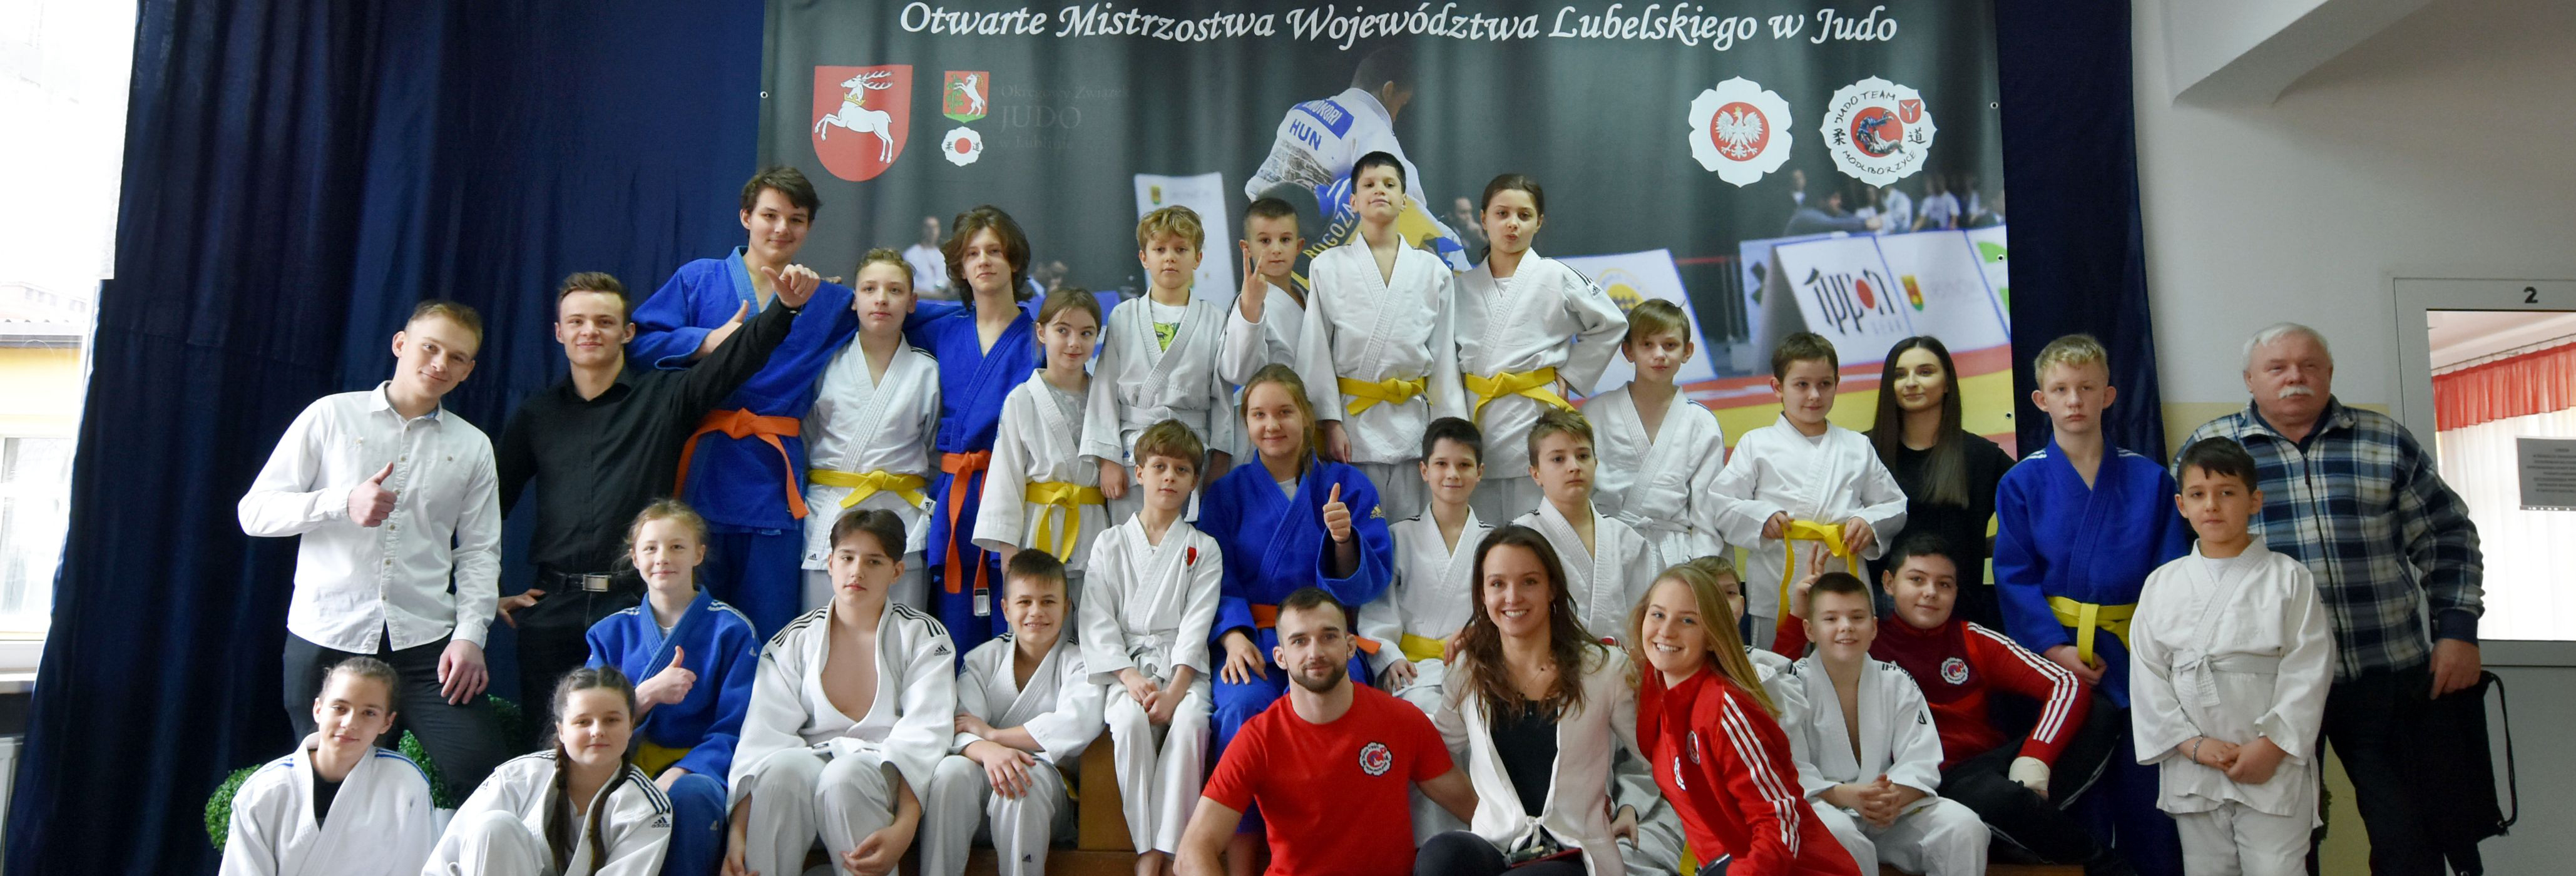 Otwarte Mistrzostwa Województwa Lubelskiego w Judo!